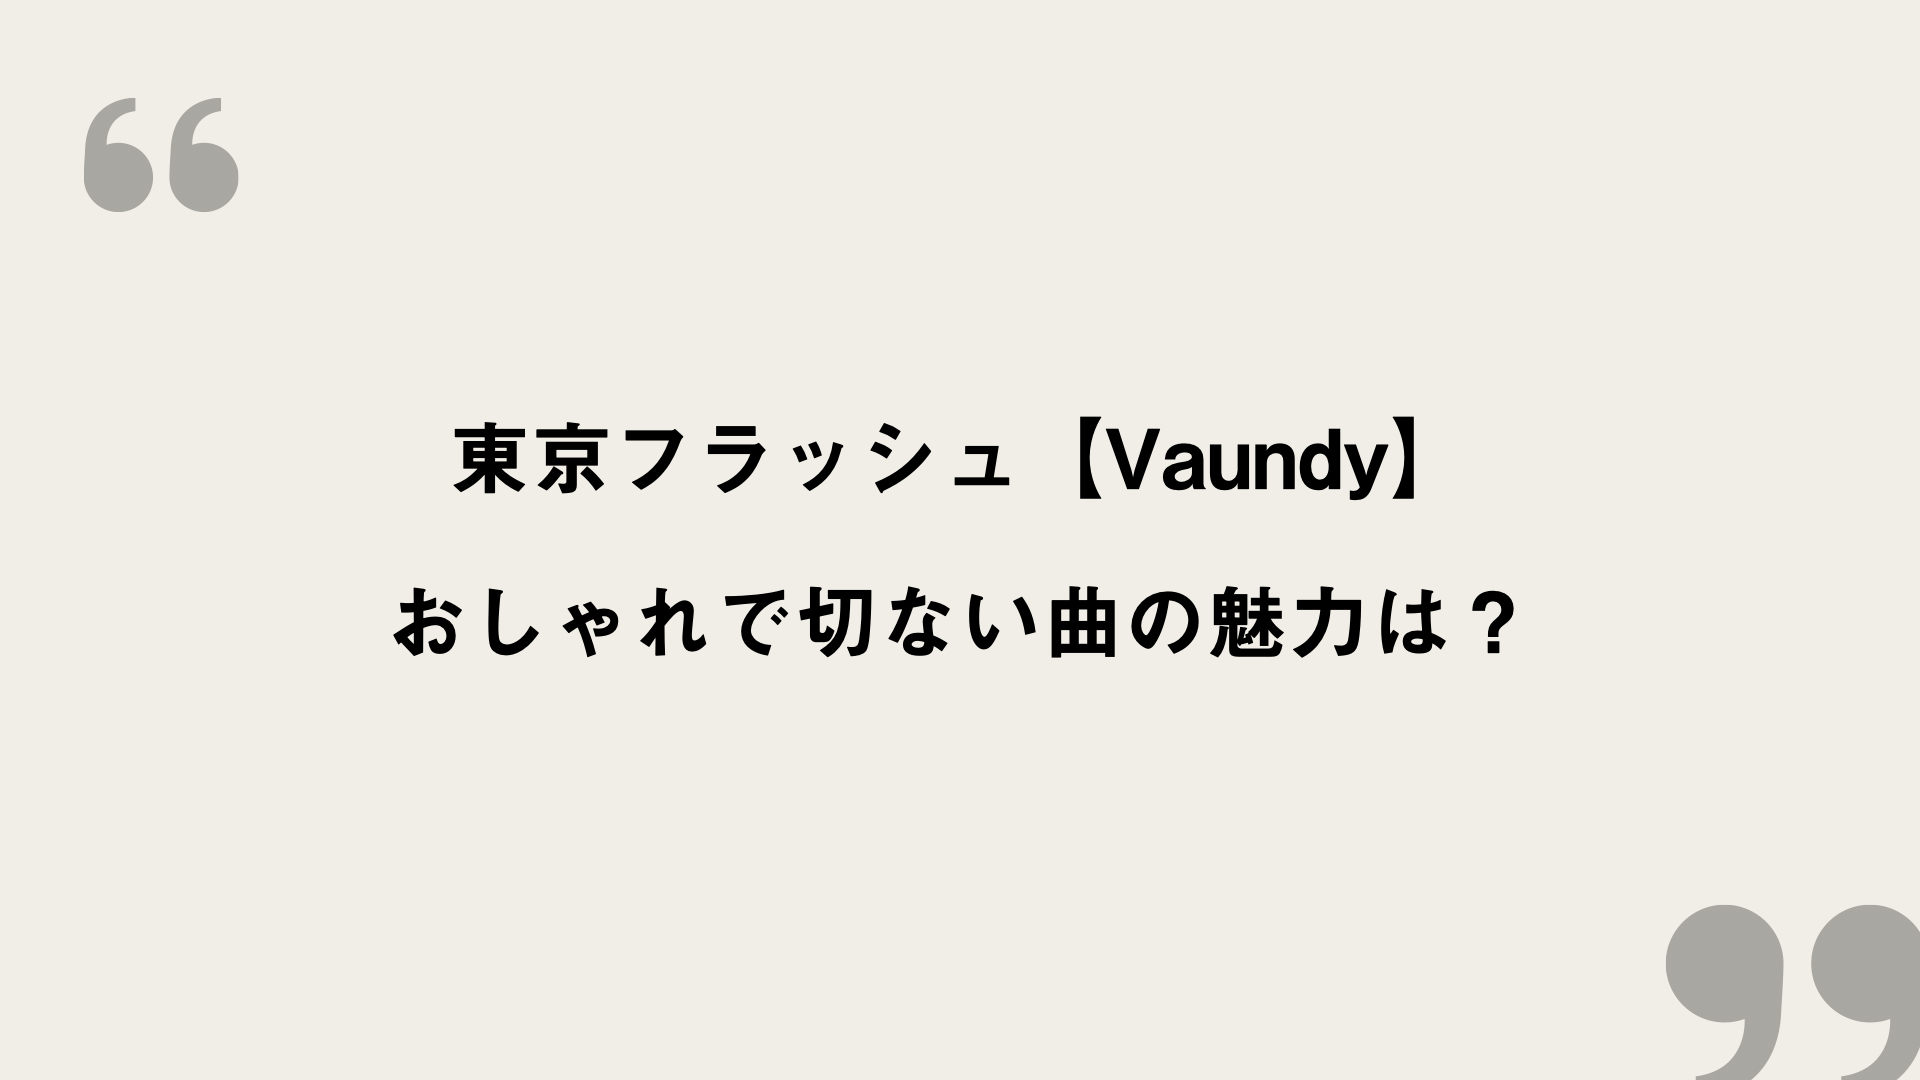 東京フラッシュ Vaundy 歌詞の意味を考察 おしゃれで切ない曲の魅力は Framu Media